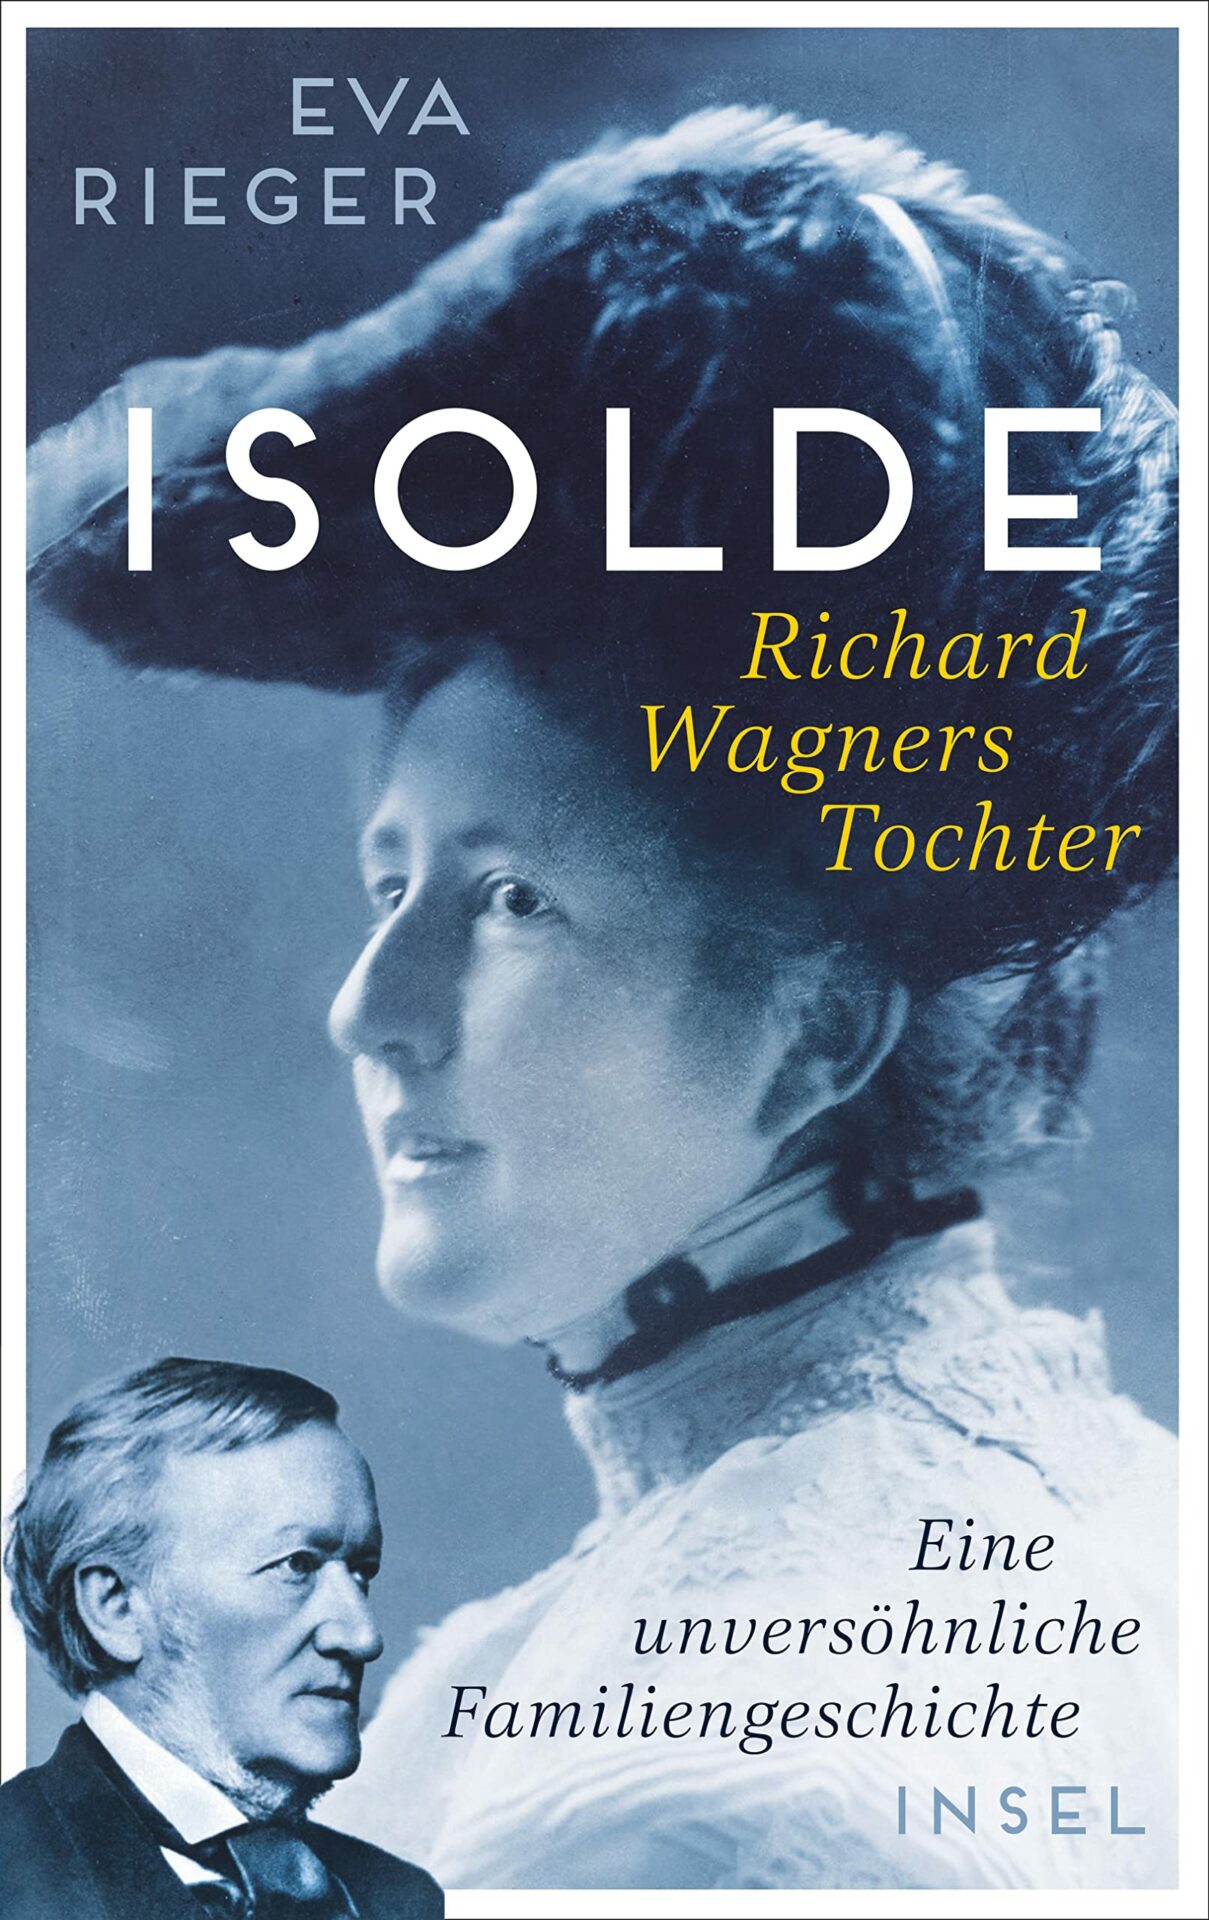 Buch-Rezension: Eva Rieger, Isolde, Wagners Tochter  Klassik-begeistert.de